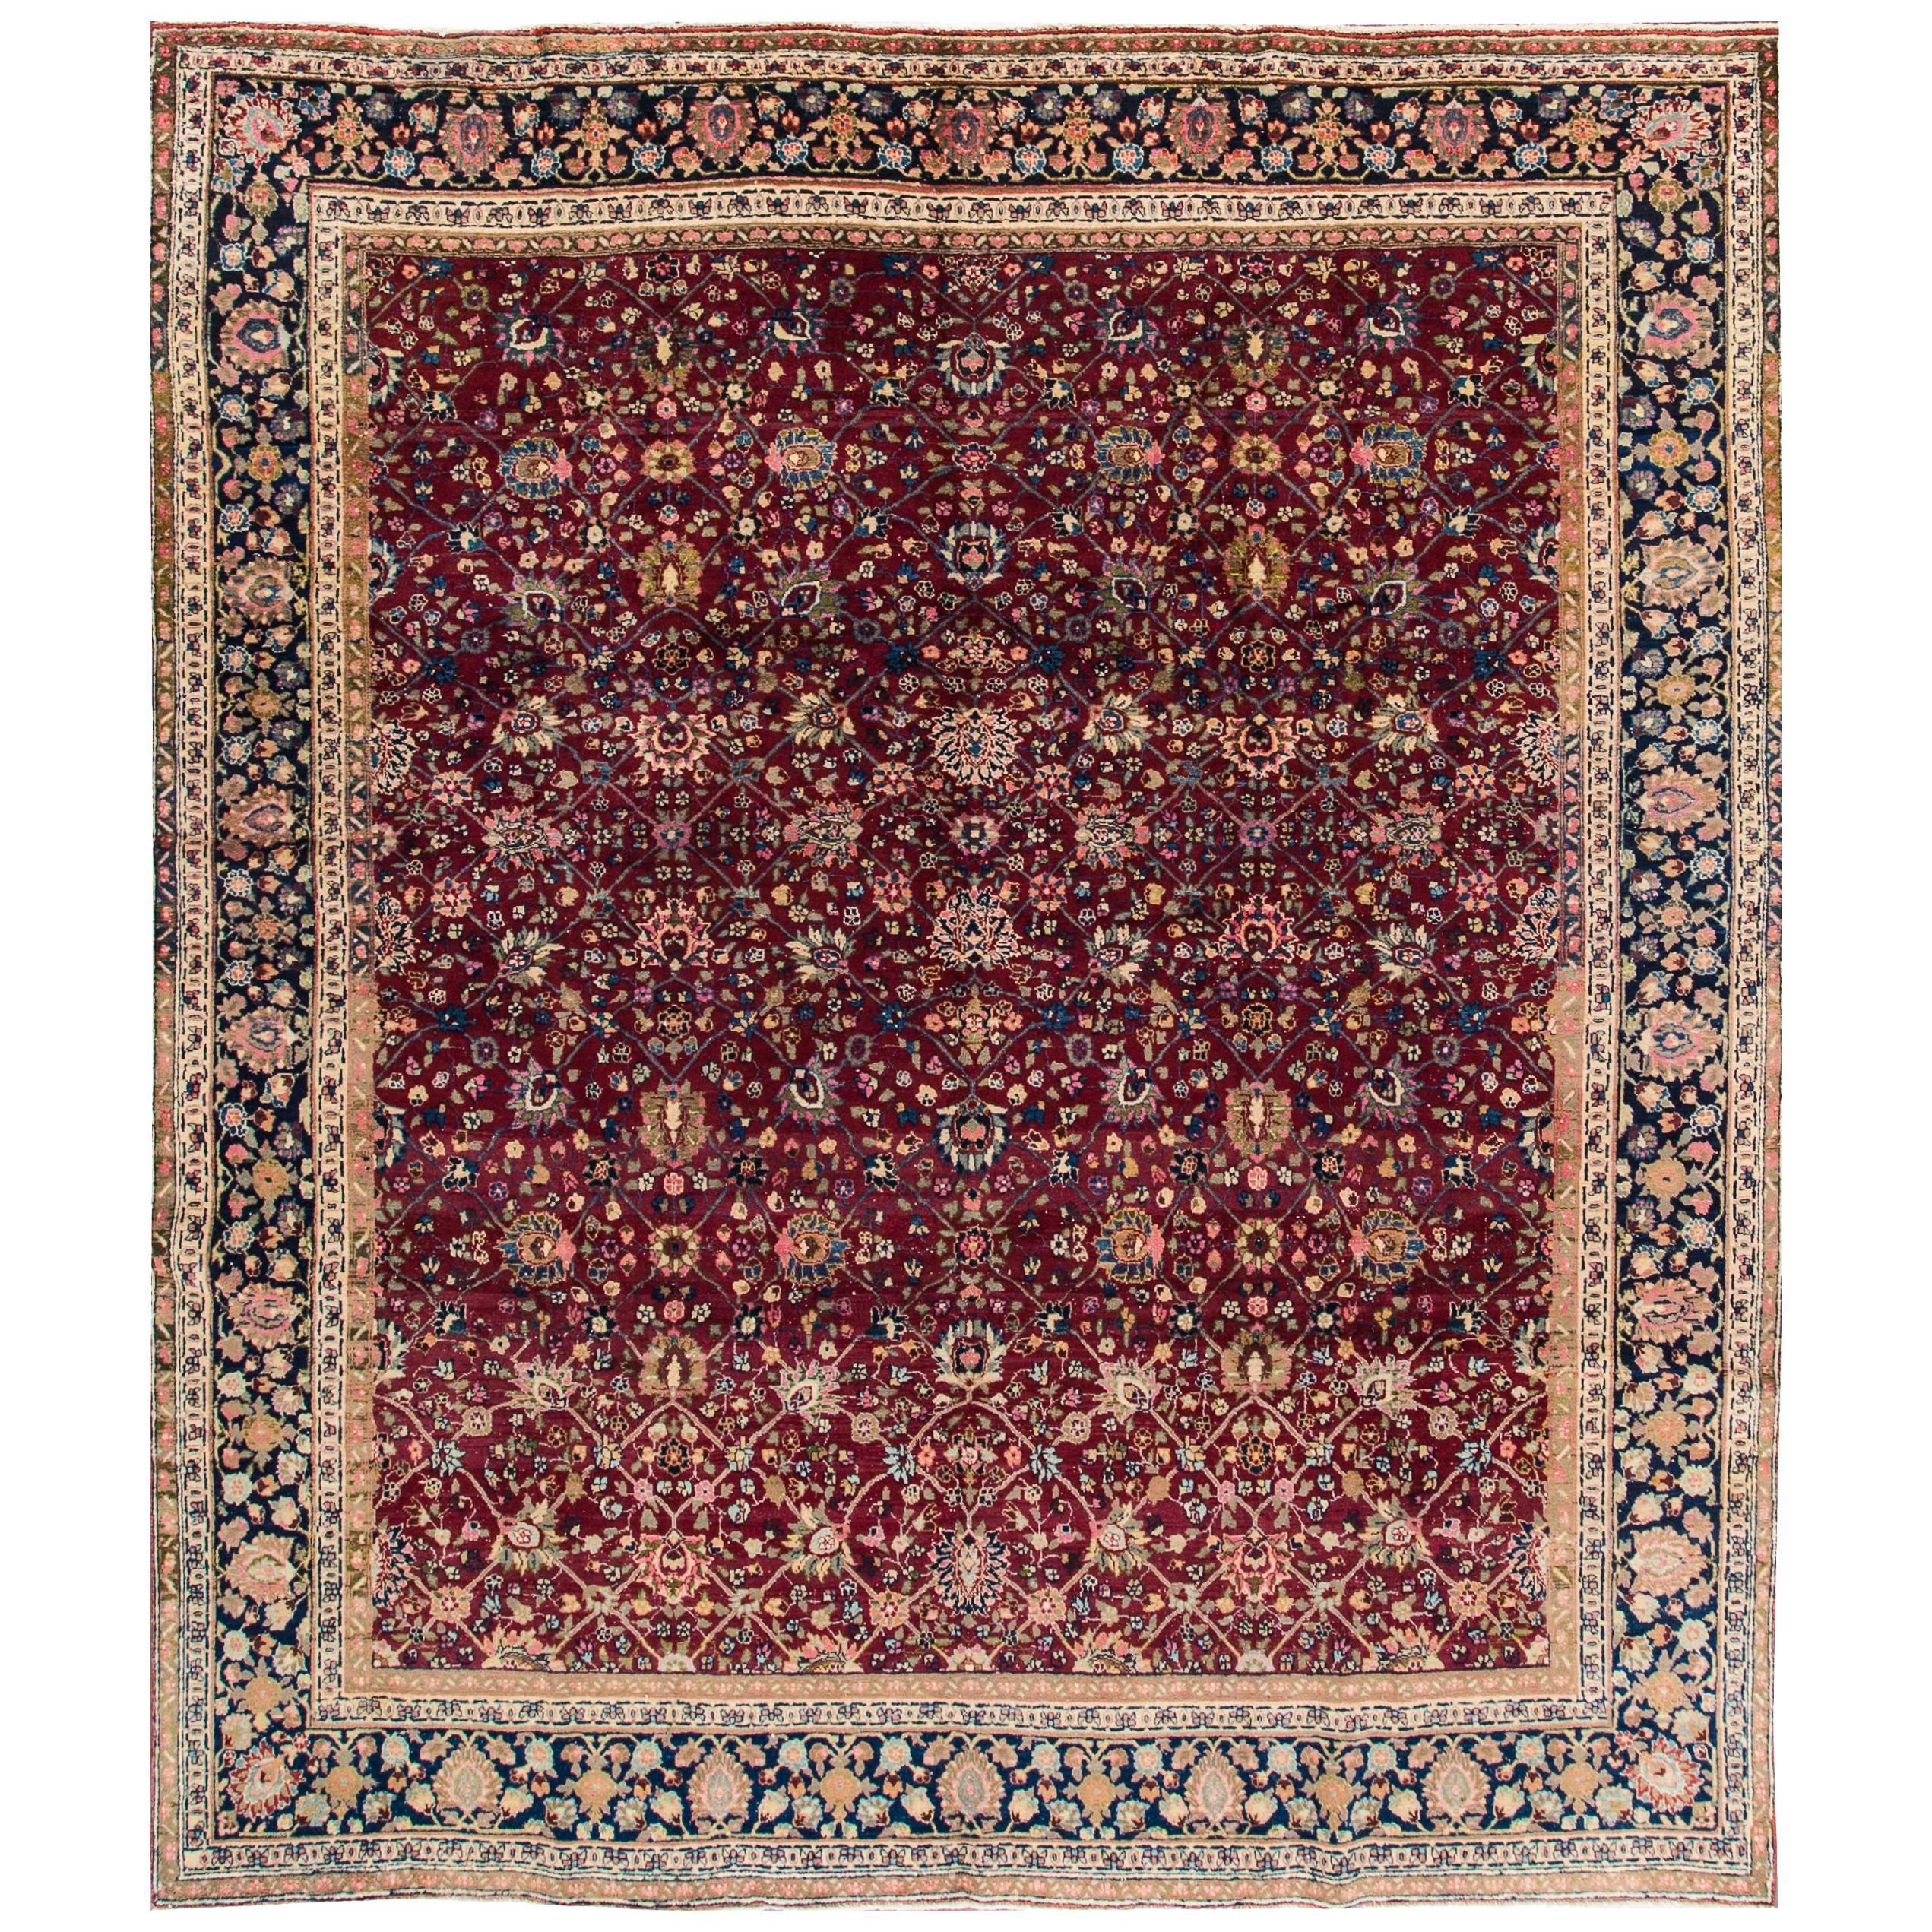 Magnifique tapis Tabriz ancien tout simplement